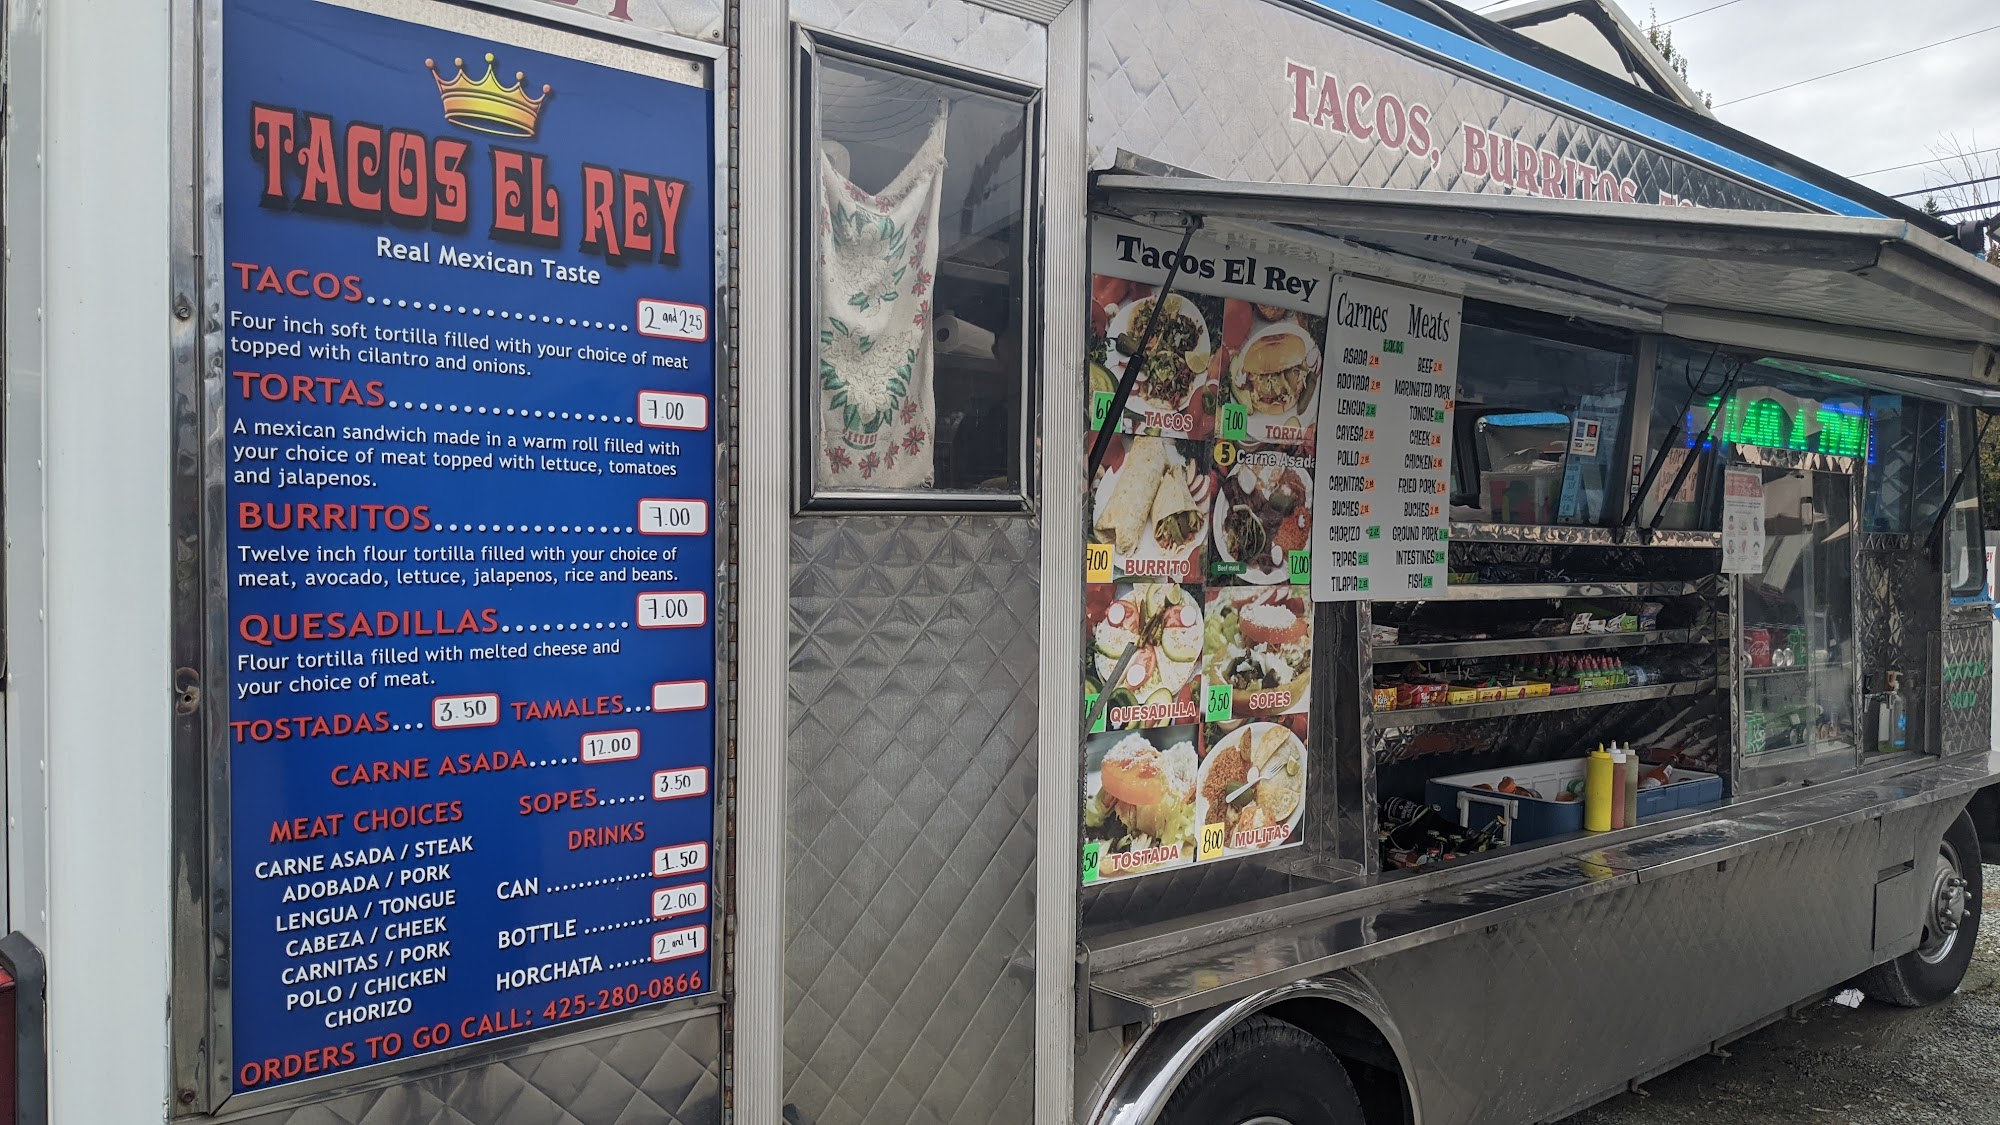 Tacos El Rey (Food Truck)